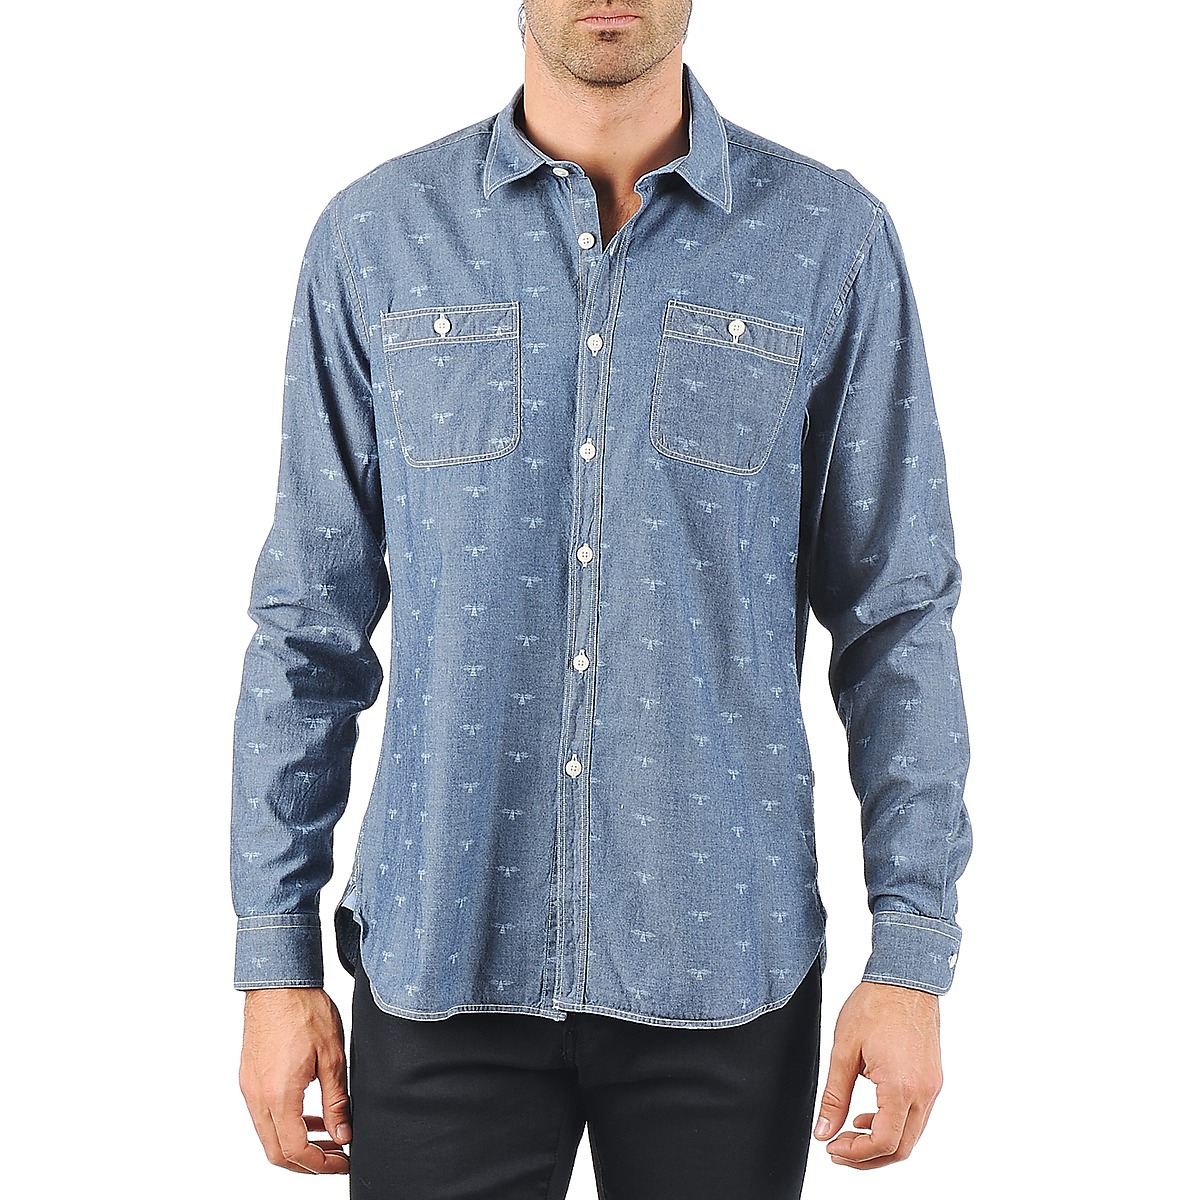 Textil Muži Košile s dlouhymi rukávy Barbour LAWSON Modrá